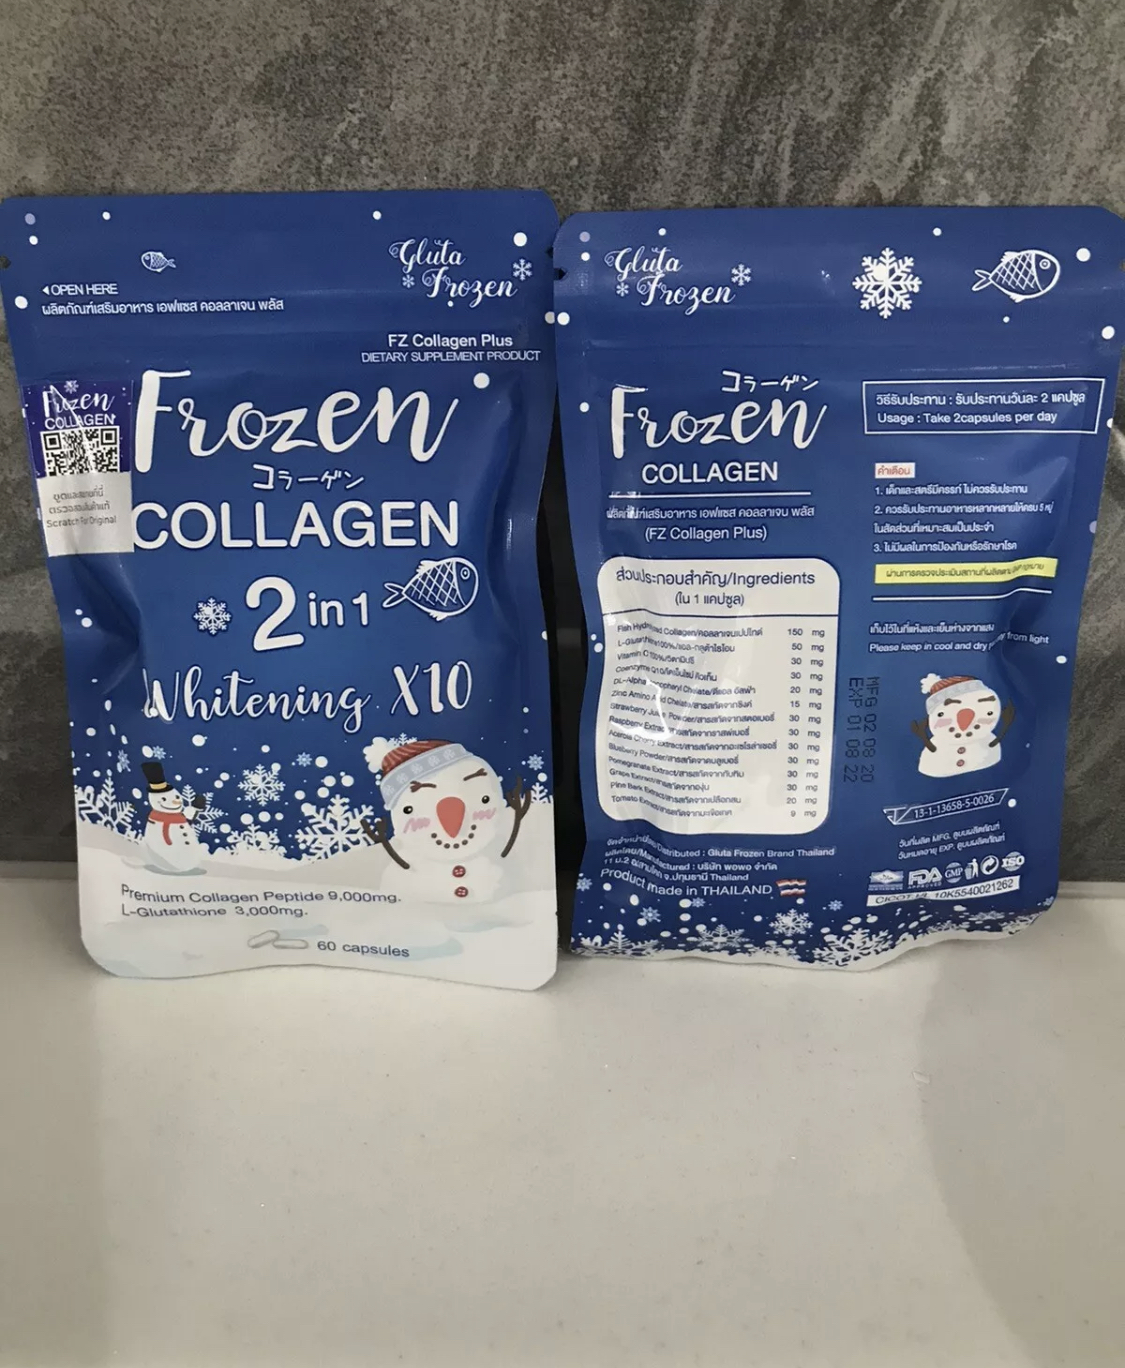 Collagen in 1 2 frozen Frozen Collagen